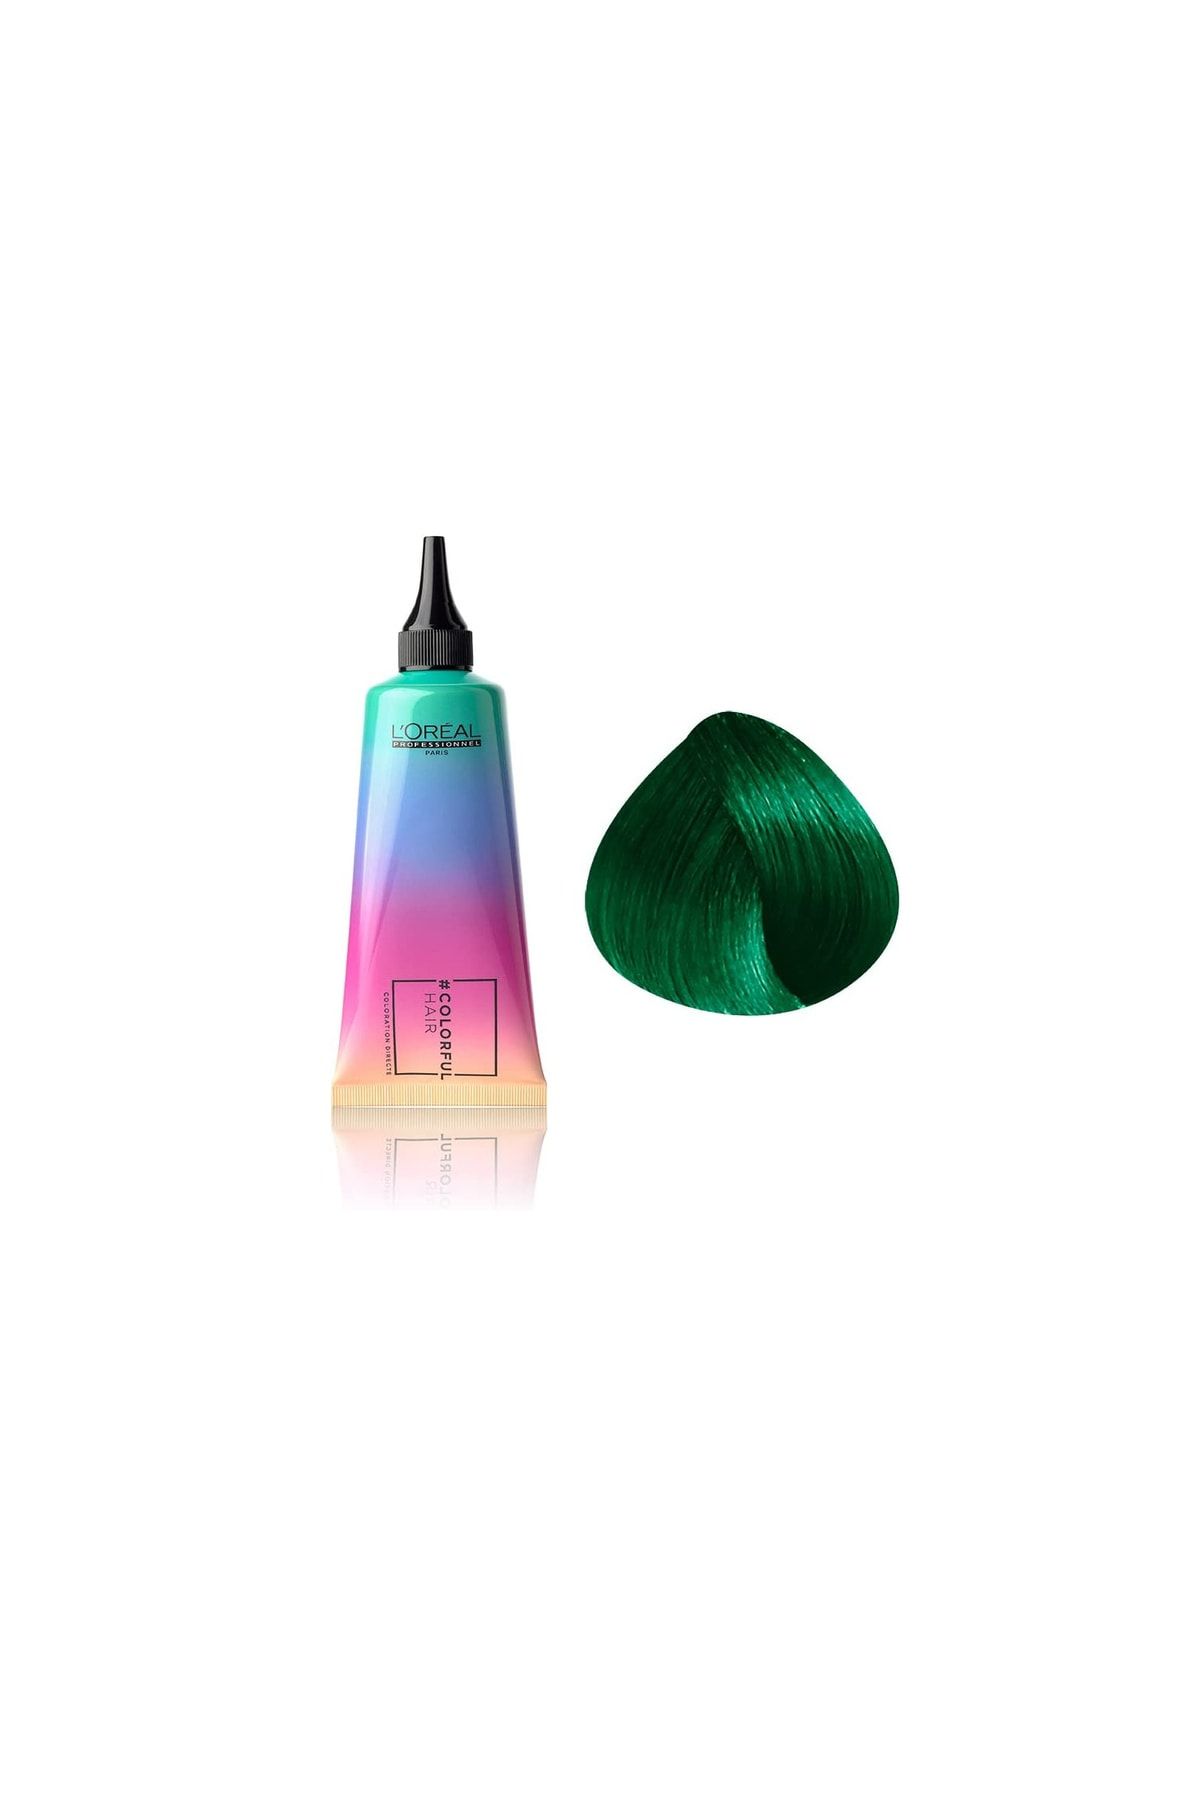 L'oreal Professionnel Colorful Hair Iced Mint Yeşil Canlı Göz Kamaştırıcı Saç Boyası 90ml